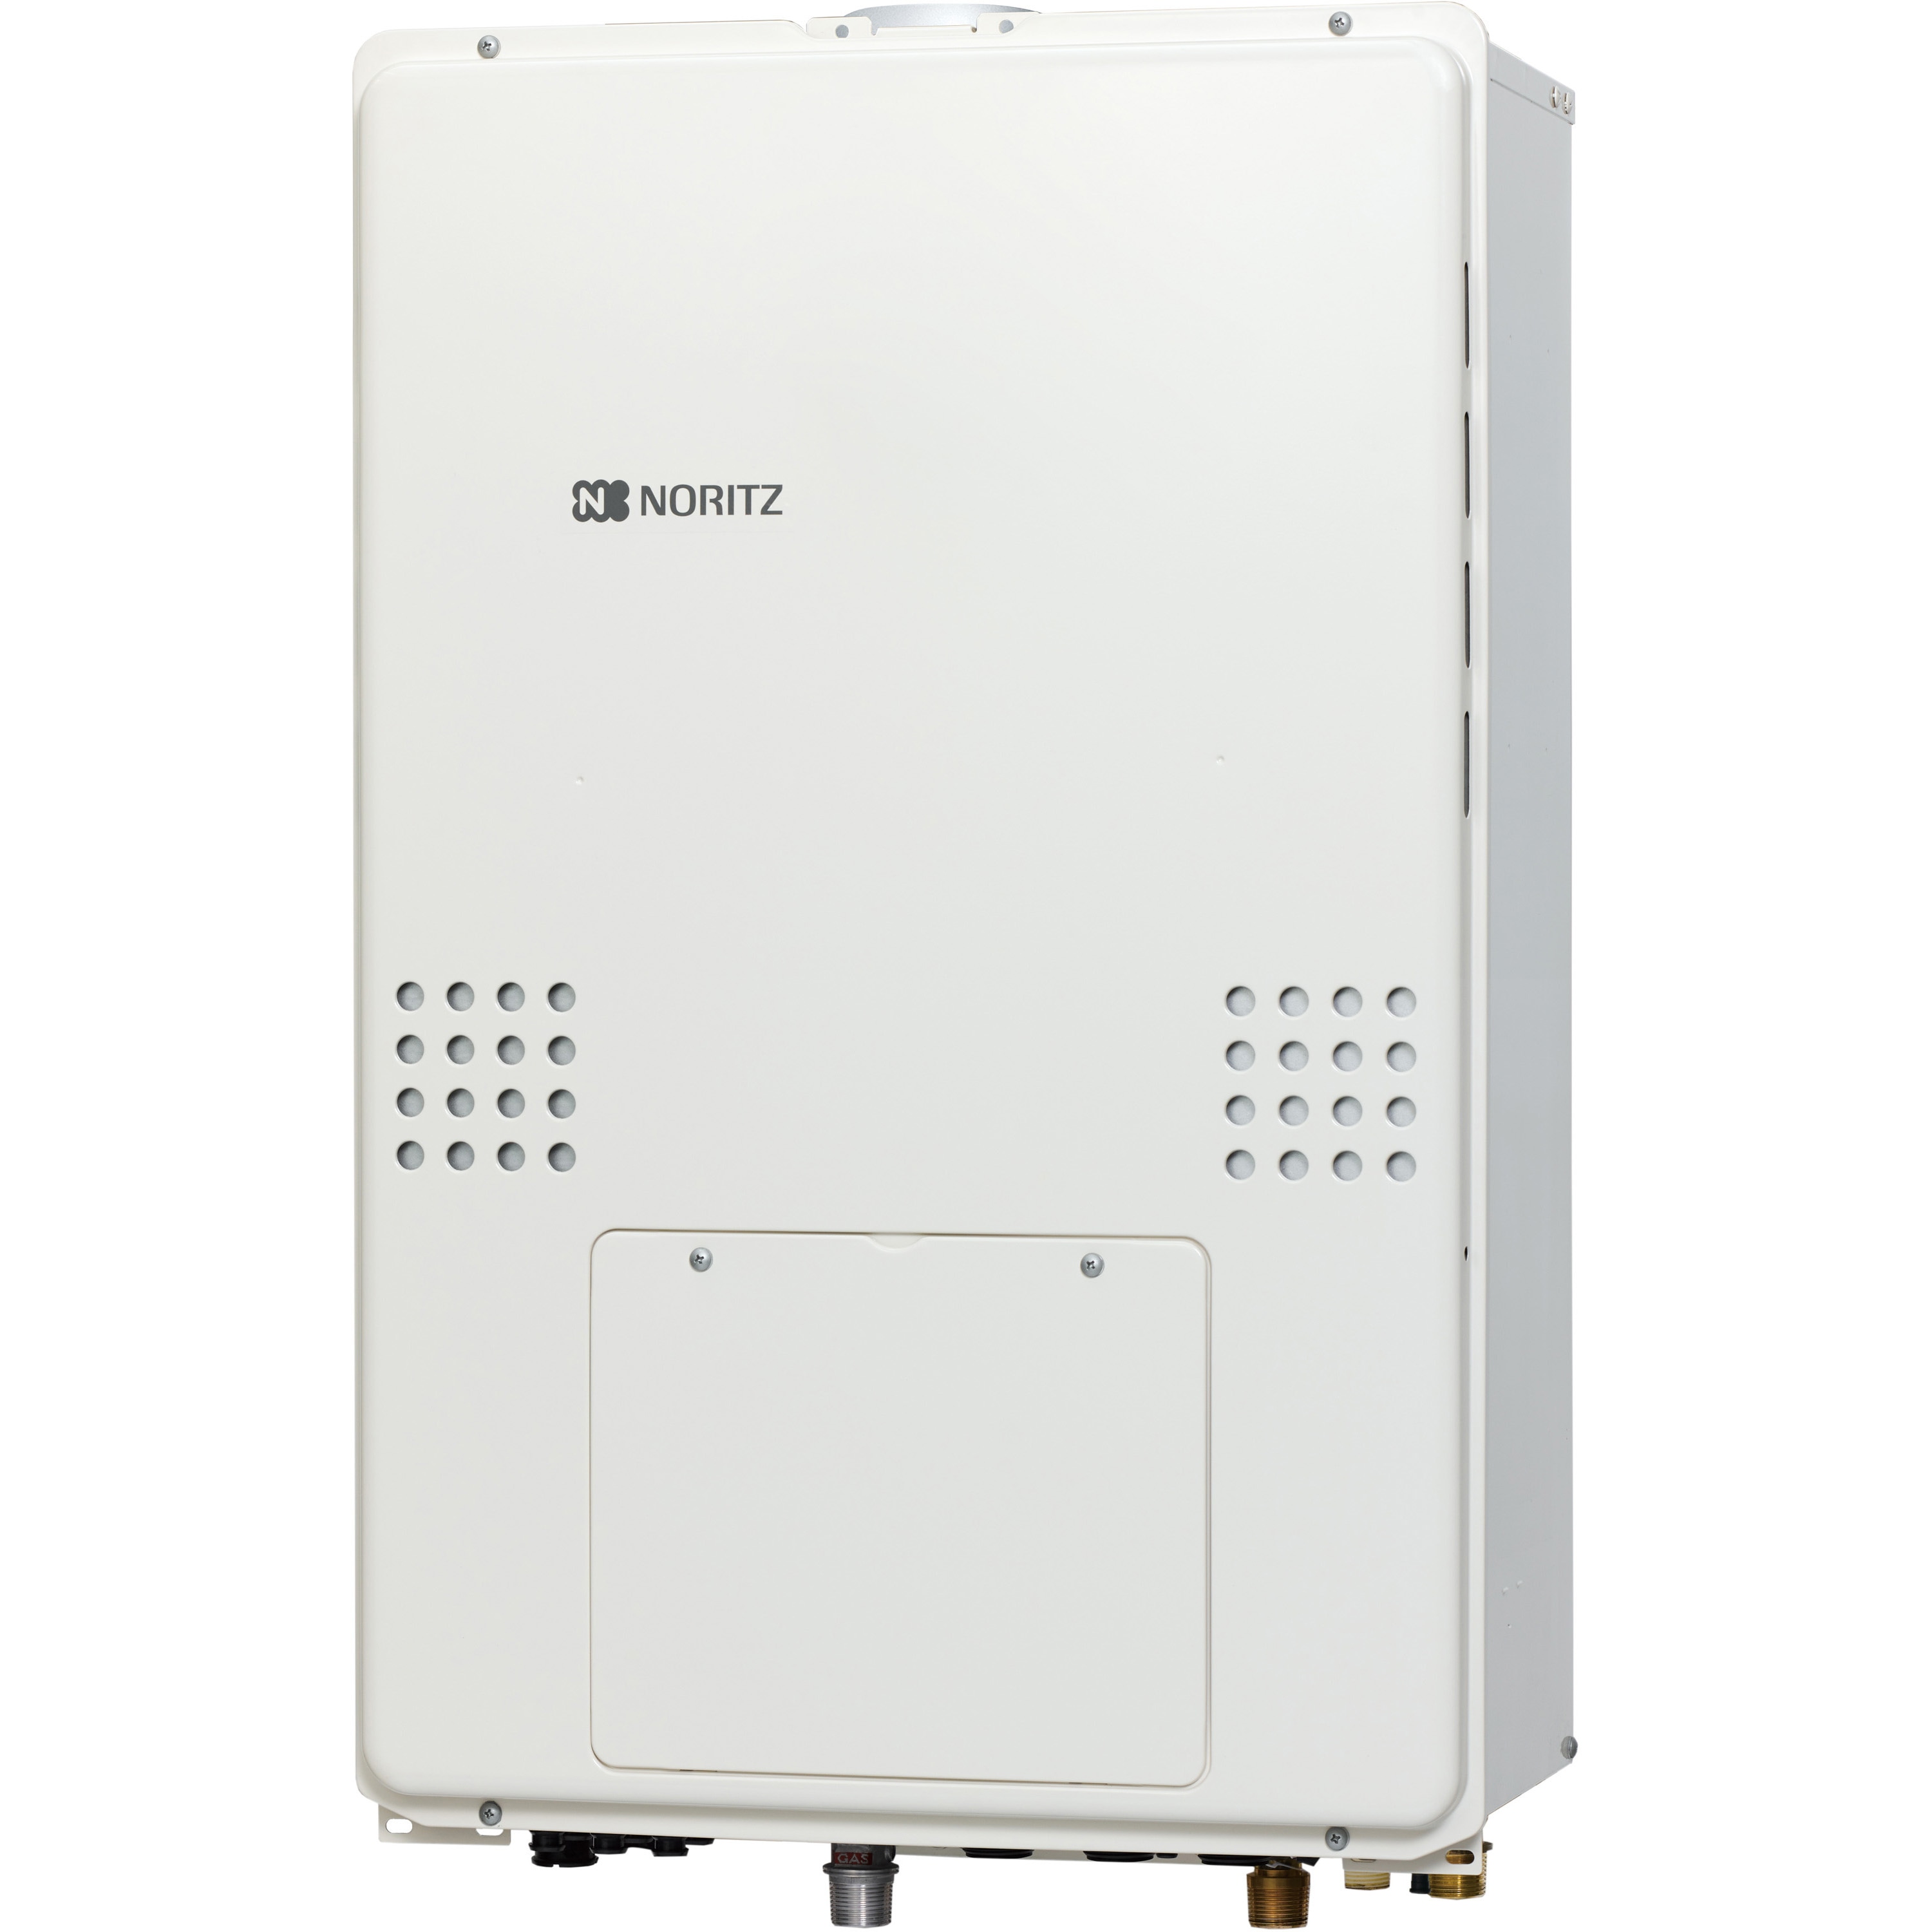 GTH-CV2460AW3H-H-1 BL 高効率ガス温水暖房付ふろ給湯器(フルオート